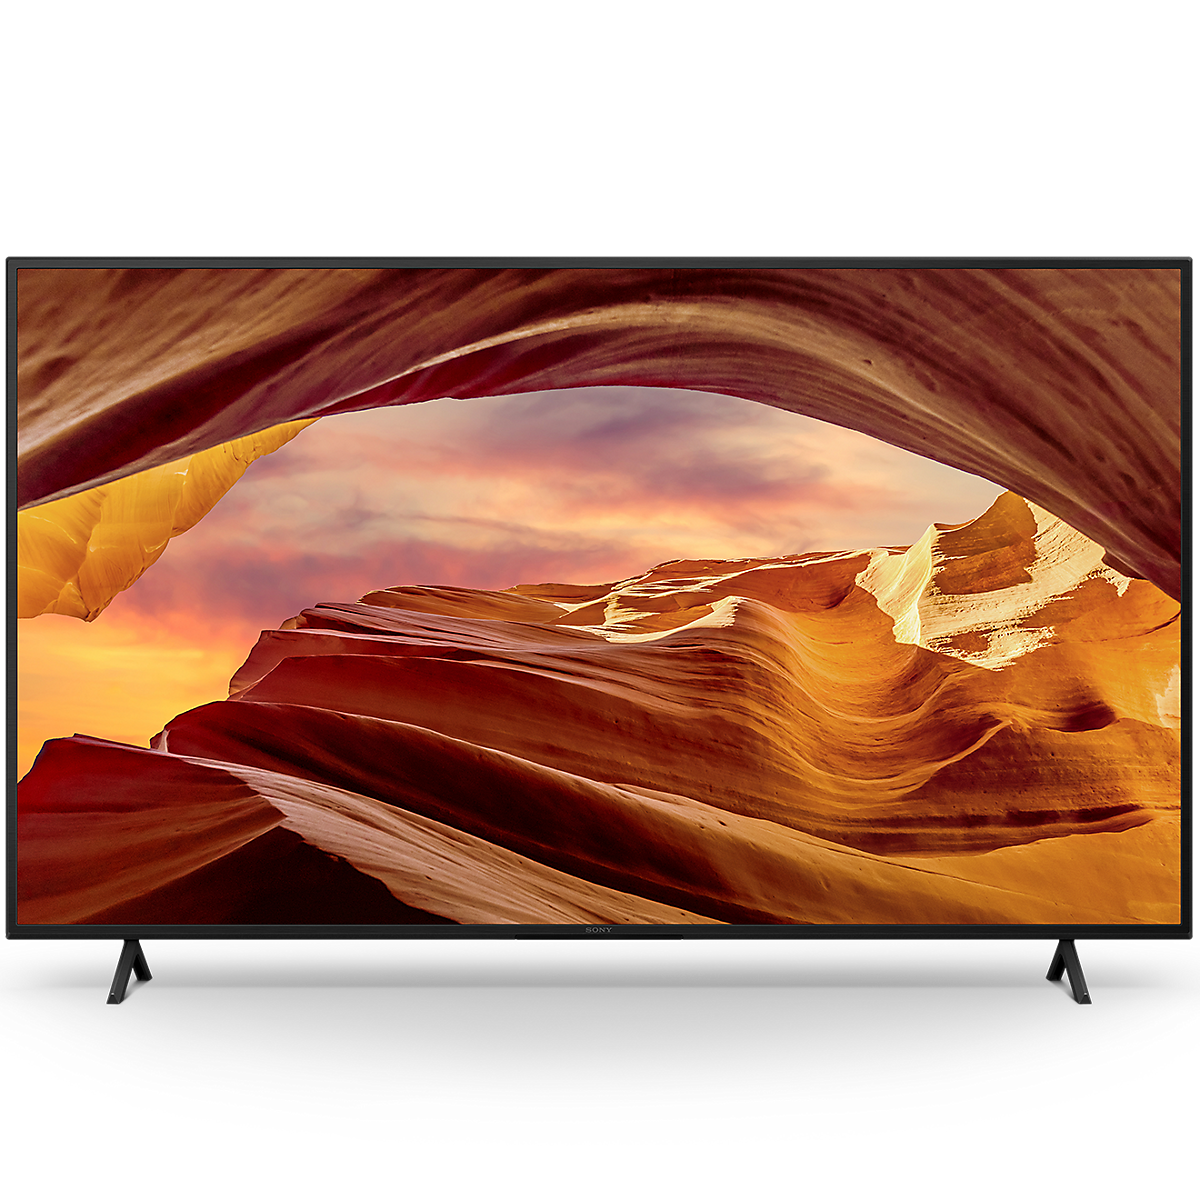 Imagine din față cu un televizor inteligent X75WL Ultra HD 4K (Google TV)